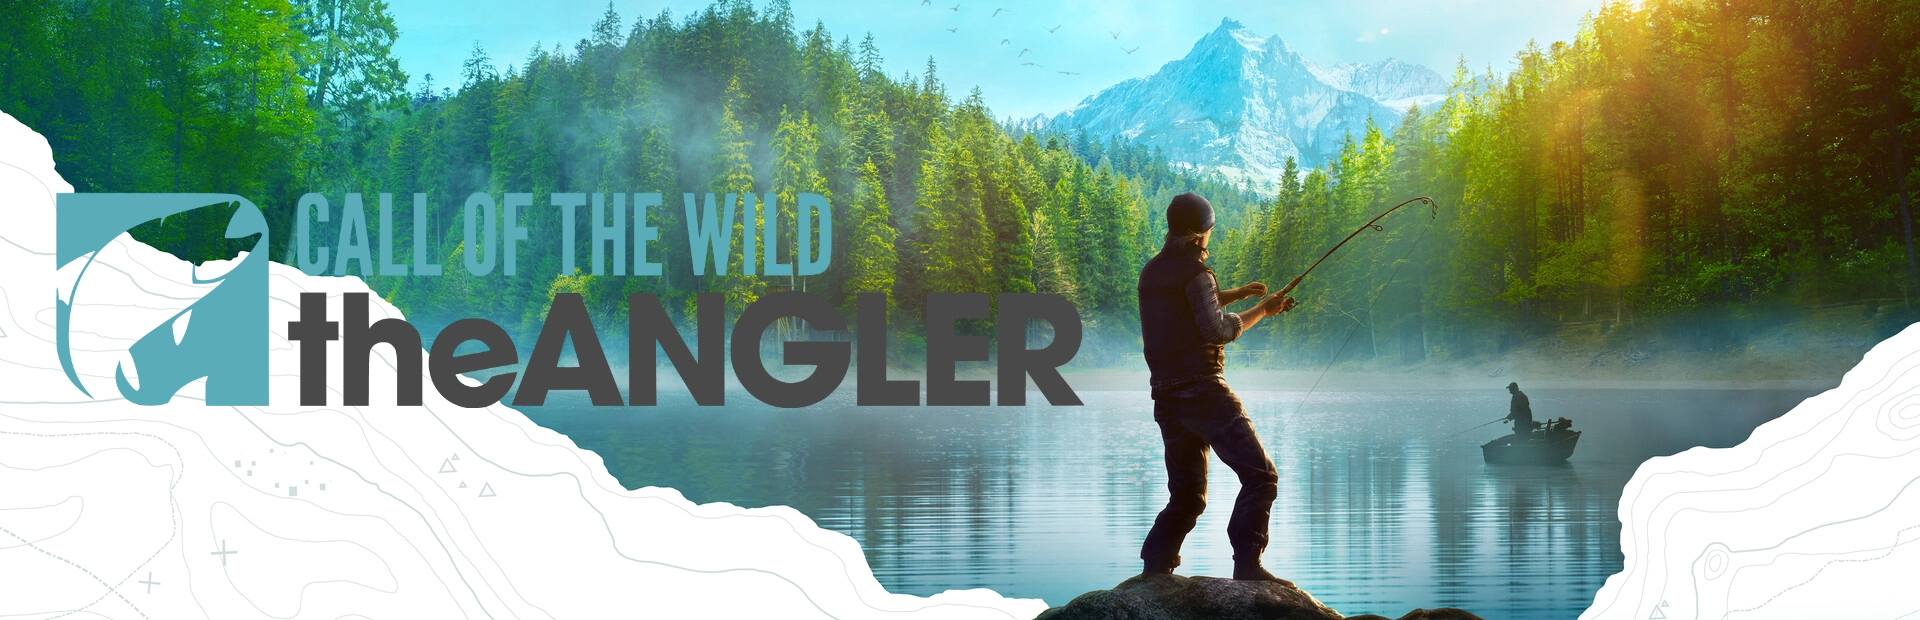 دانلود بازی Call of the Wild: The Angler برای کامپیوتر | گیمباتو